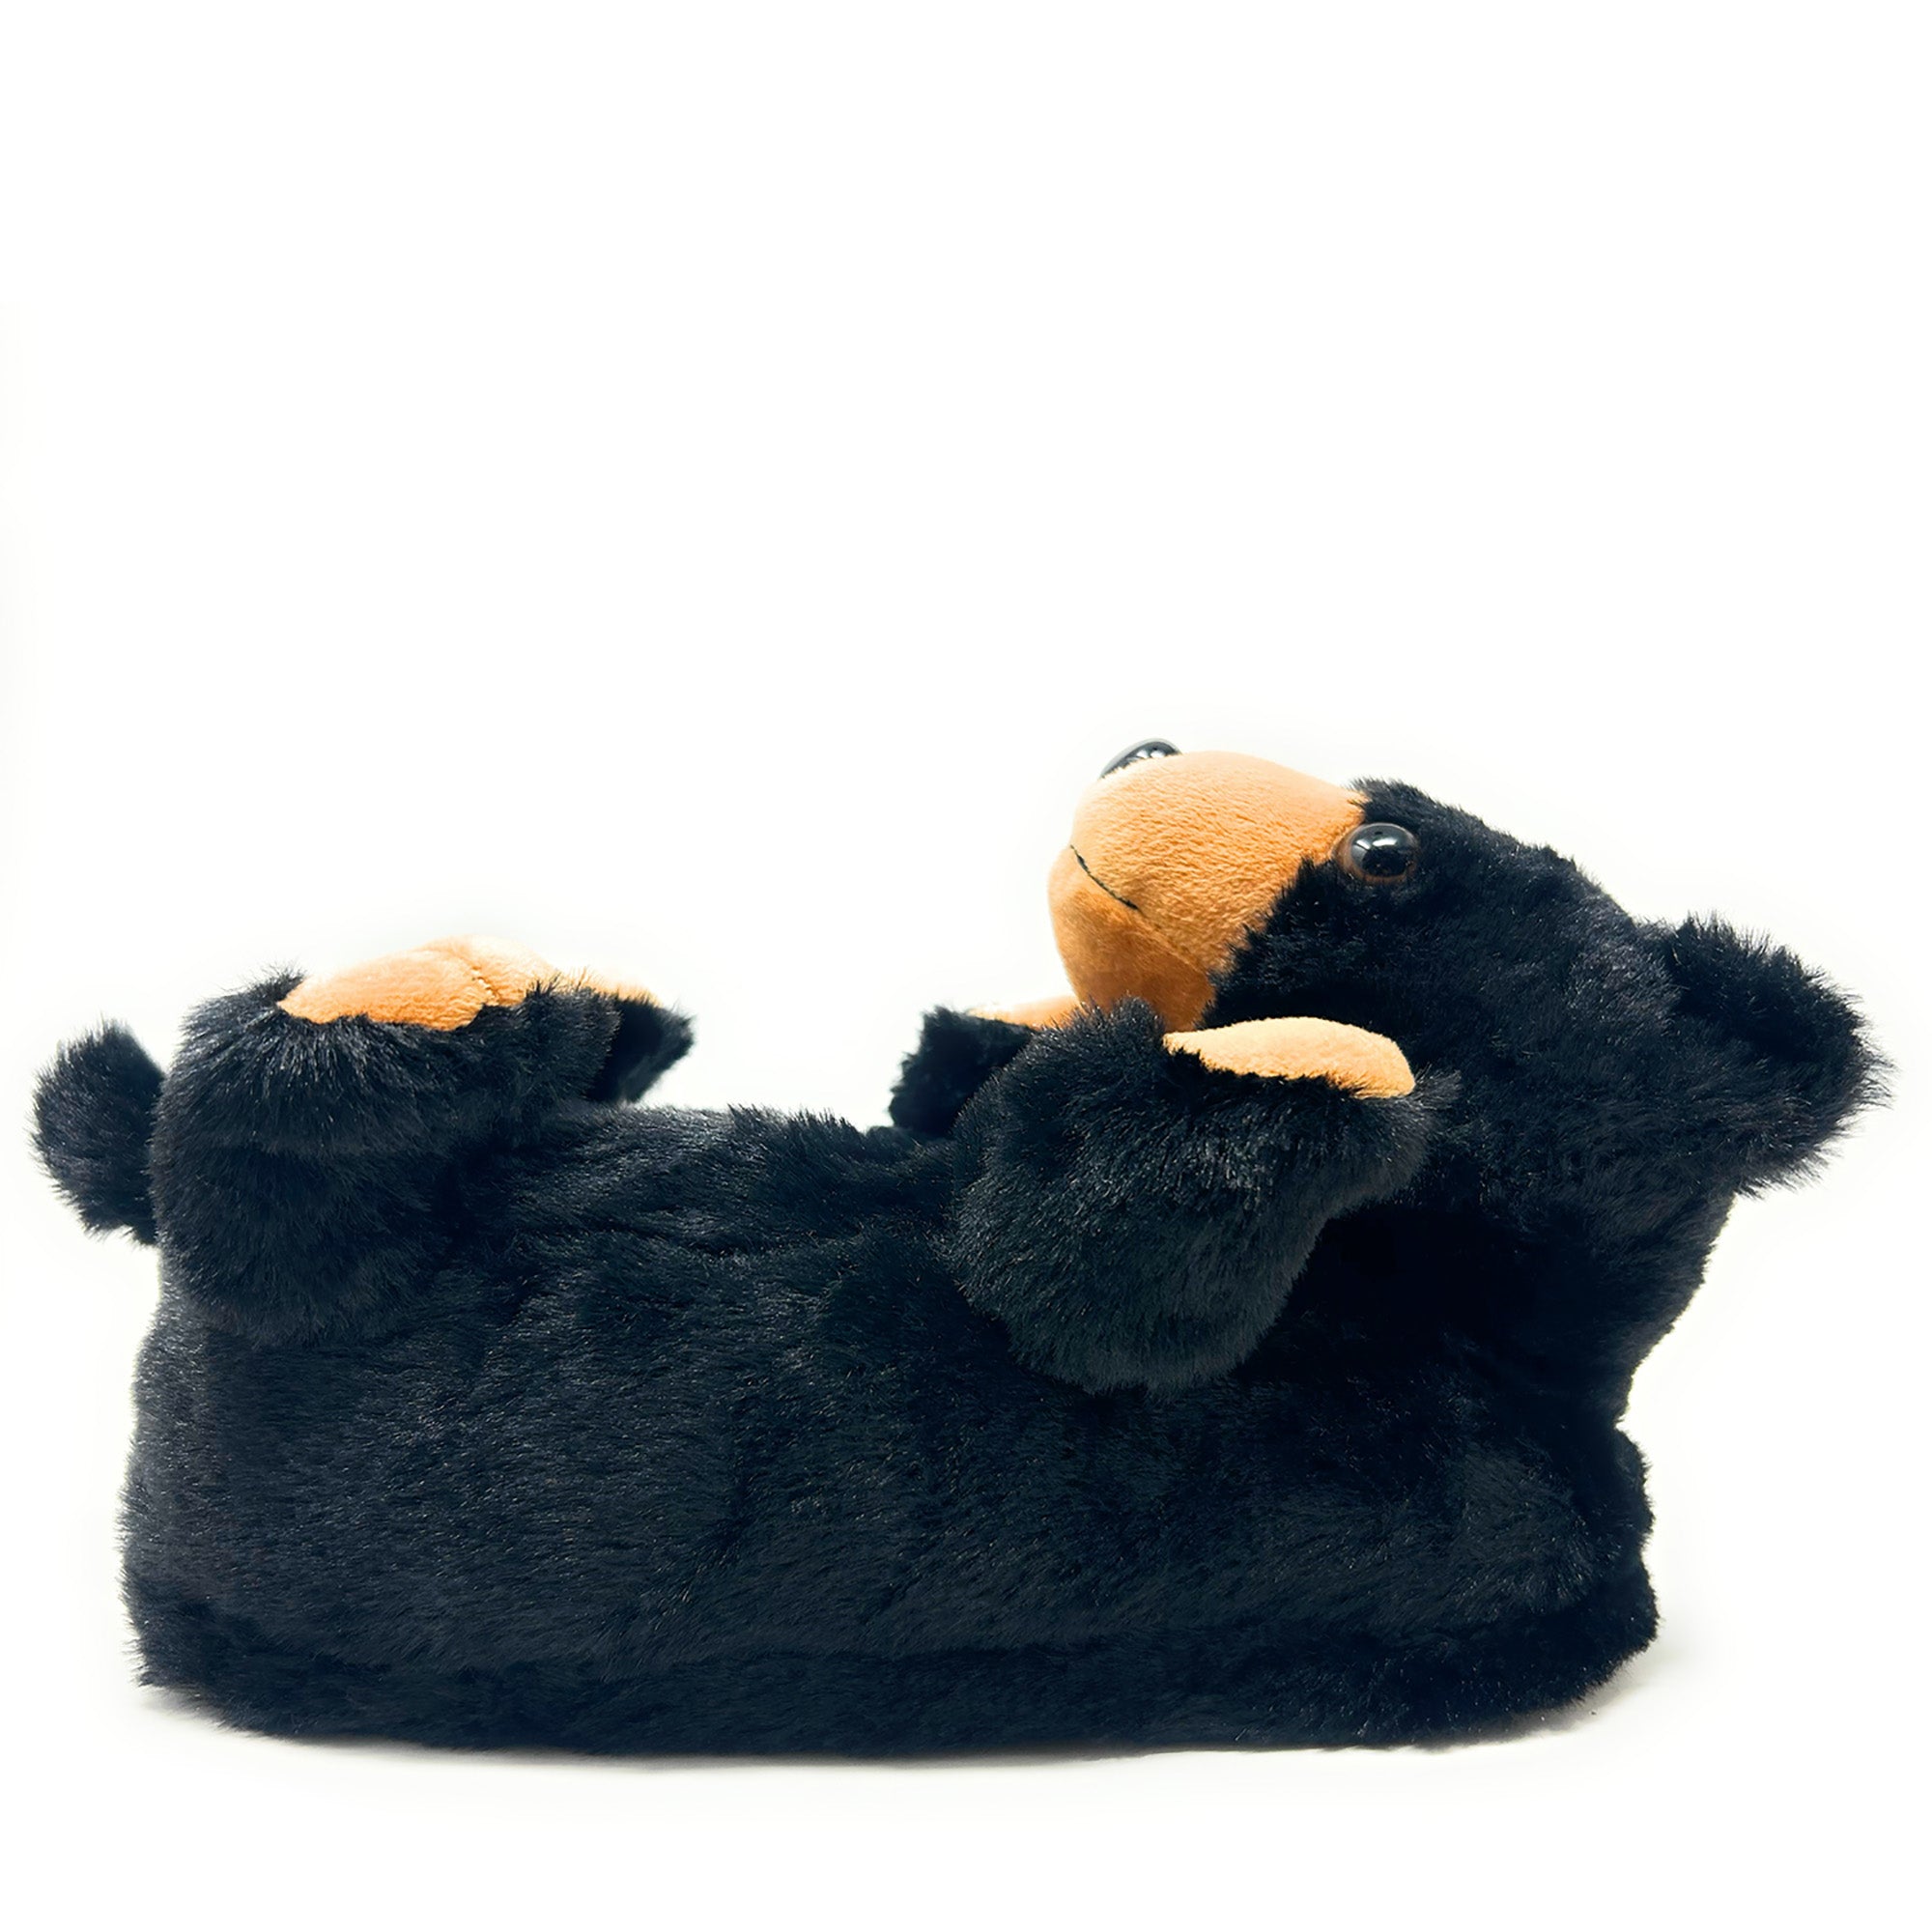 Pantuflas para niños Black Bear Hugs